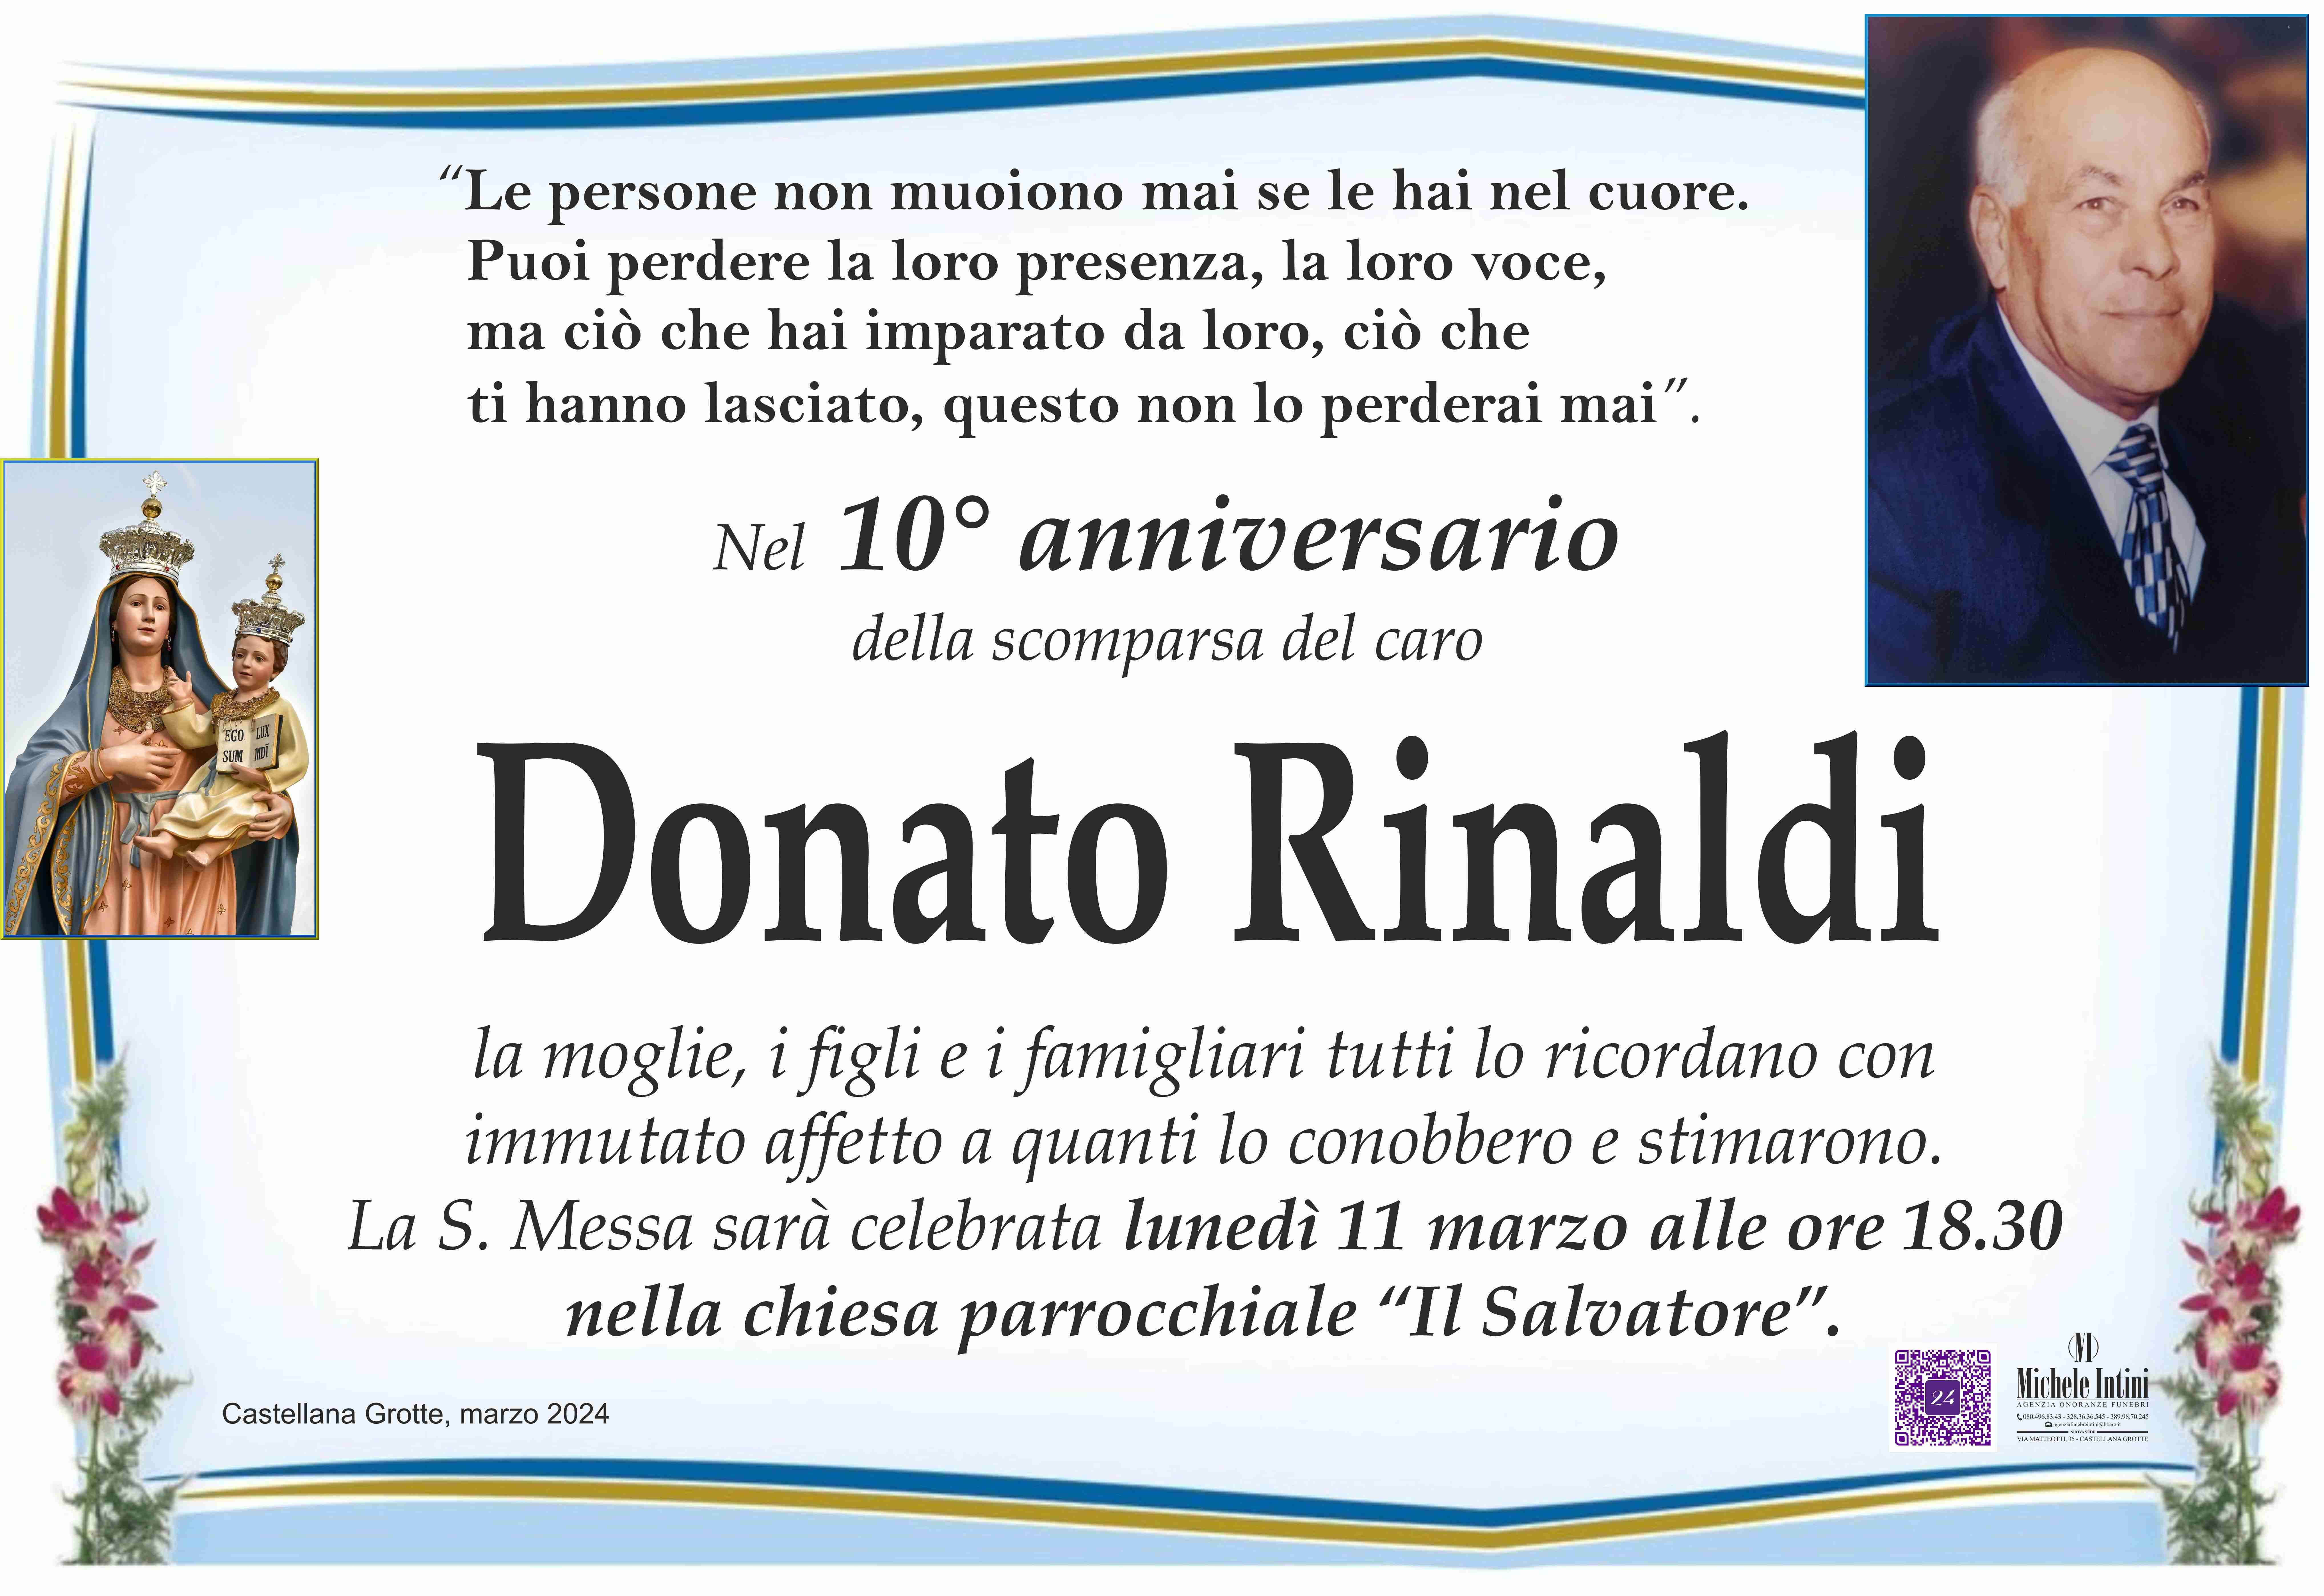 Donato Rinaldi